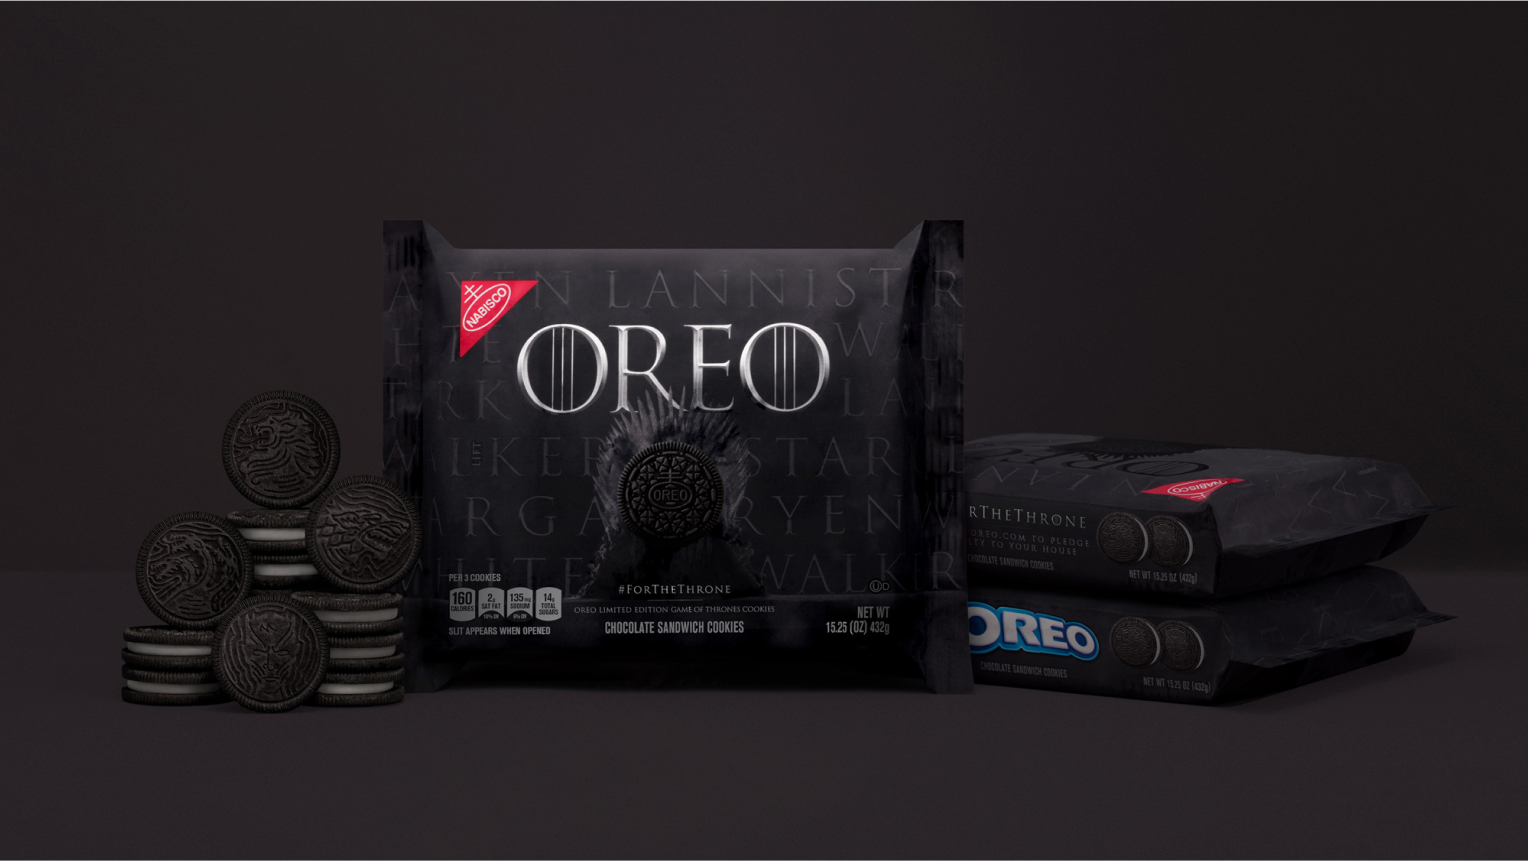 Game of Thrones Oreo Cookie Packaging